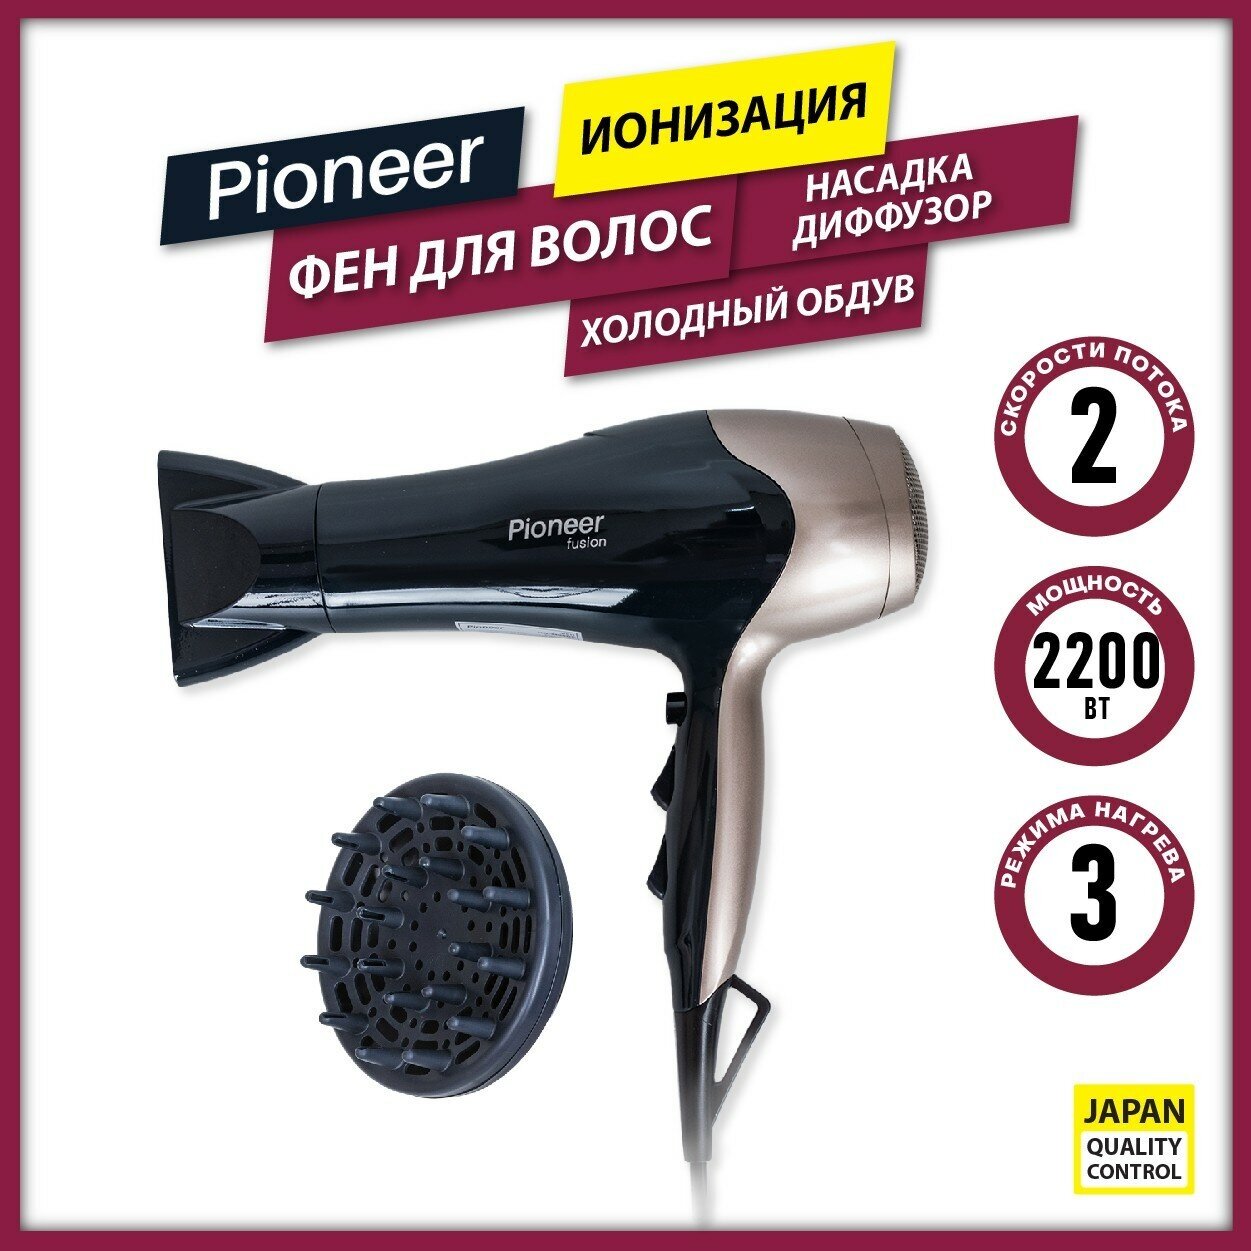 Фен для волос Pioneer HD-2200DC с 2 насадками, ионизацией и холодным воздухом, 2 скорости, 3 температурных режима, 2200 Вт